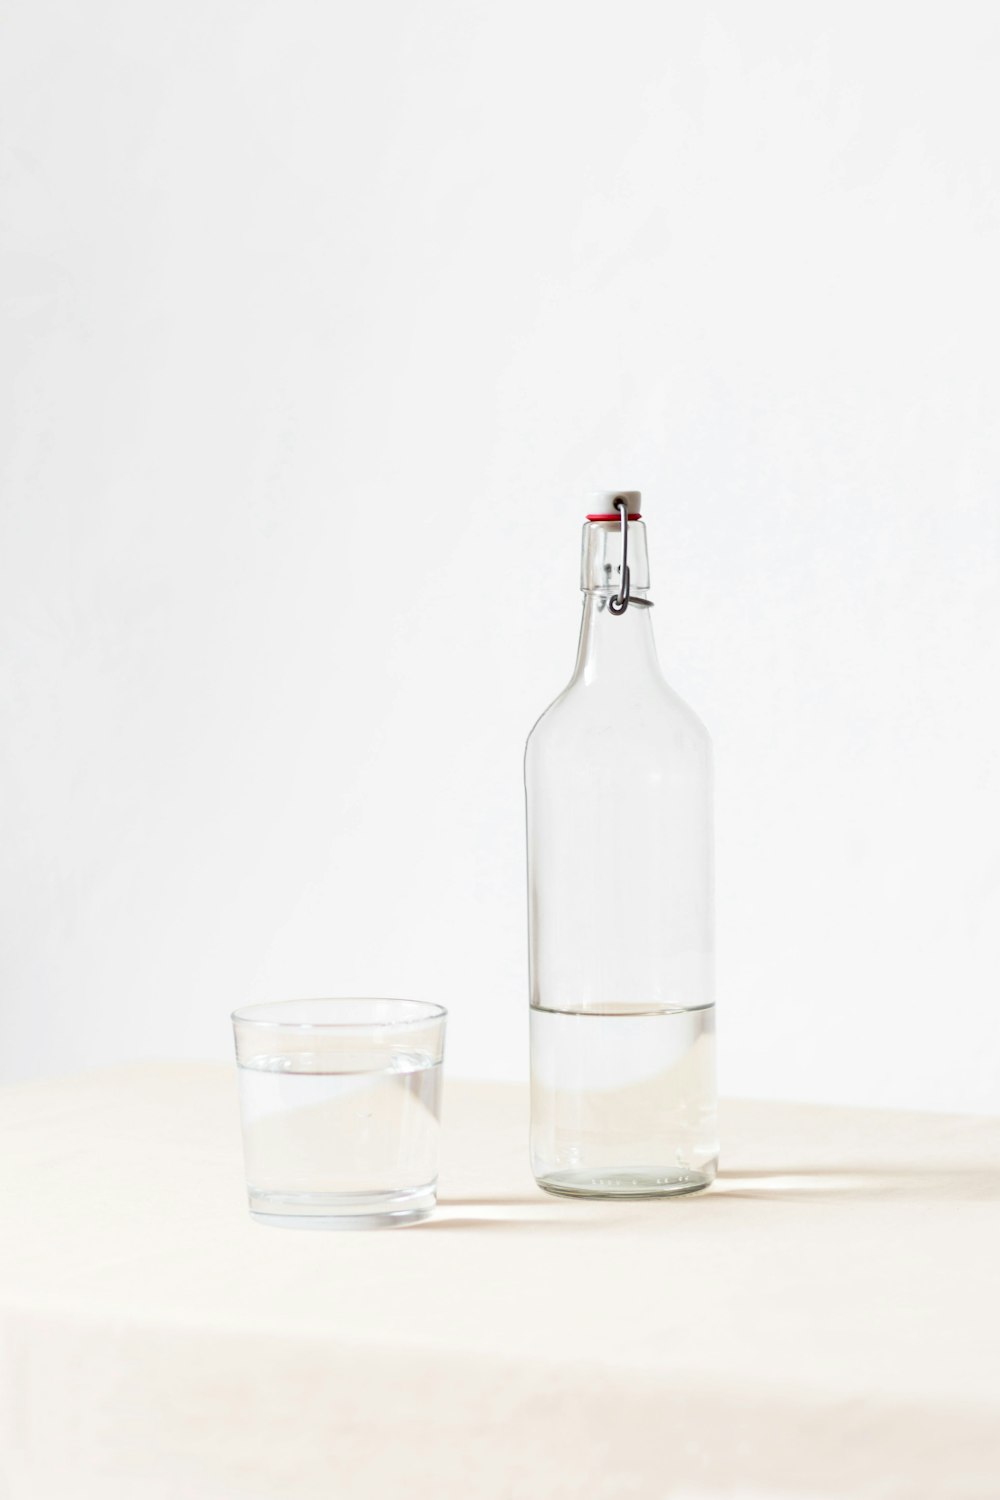 rockt Glas neben halbleerer Flasche auf weißer Oberfläche